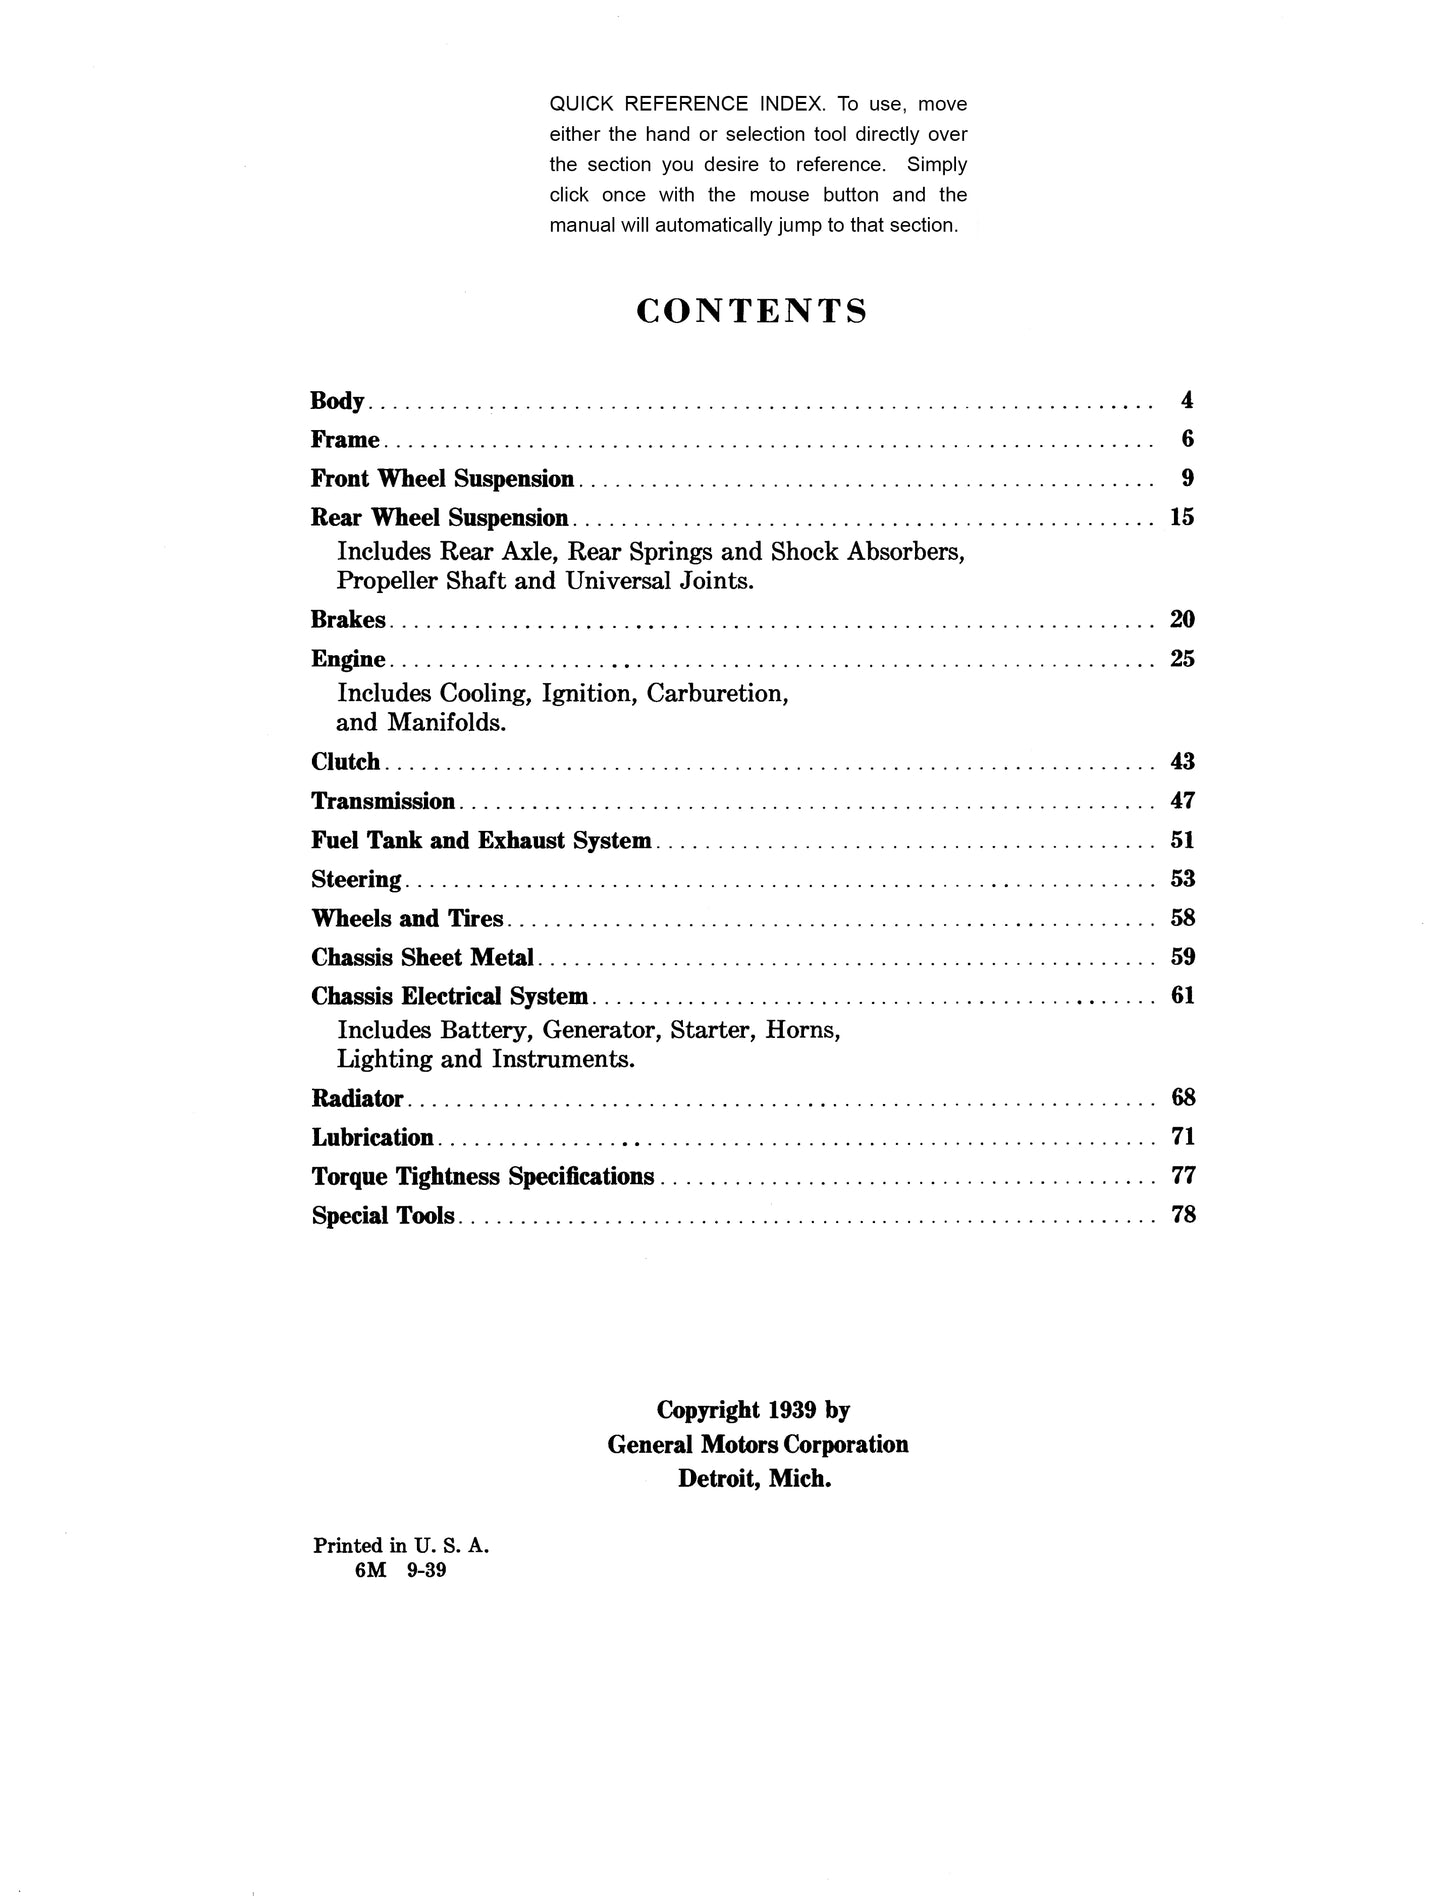 1939, 1940, 1941 Cadillac & Lasalle Repair Manual - All Models